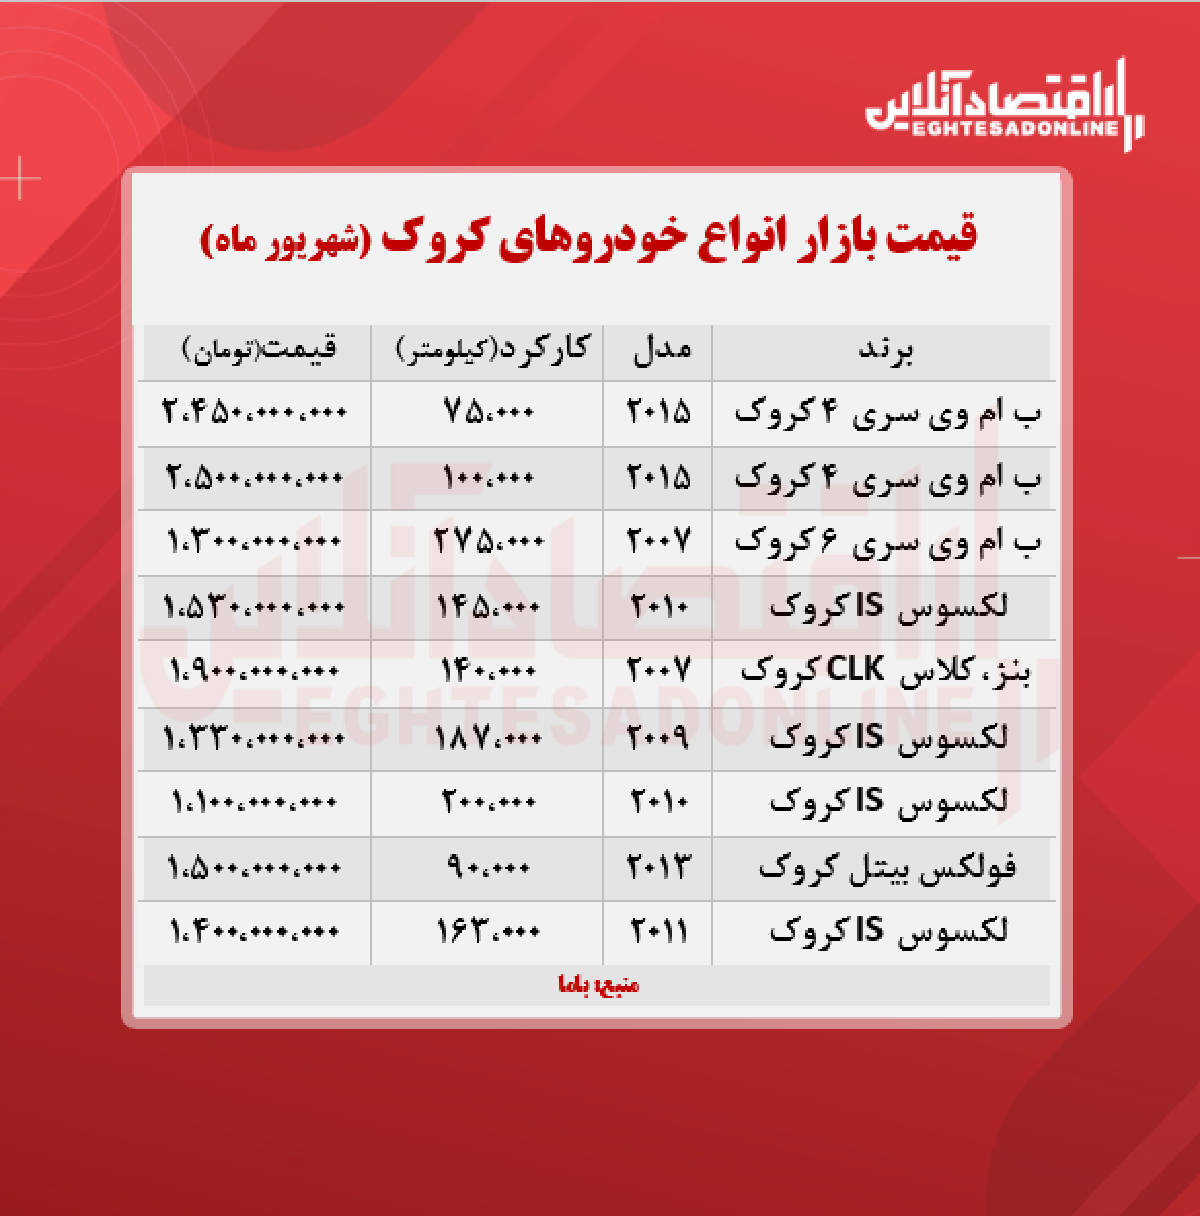 قیمت خودروهای کروک در تهران + جدول